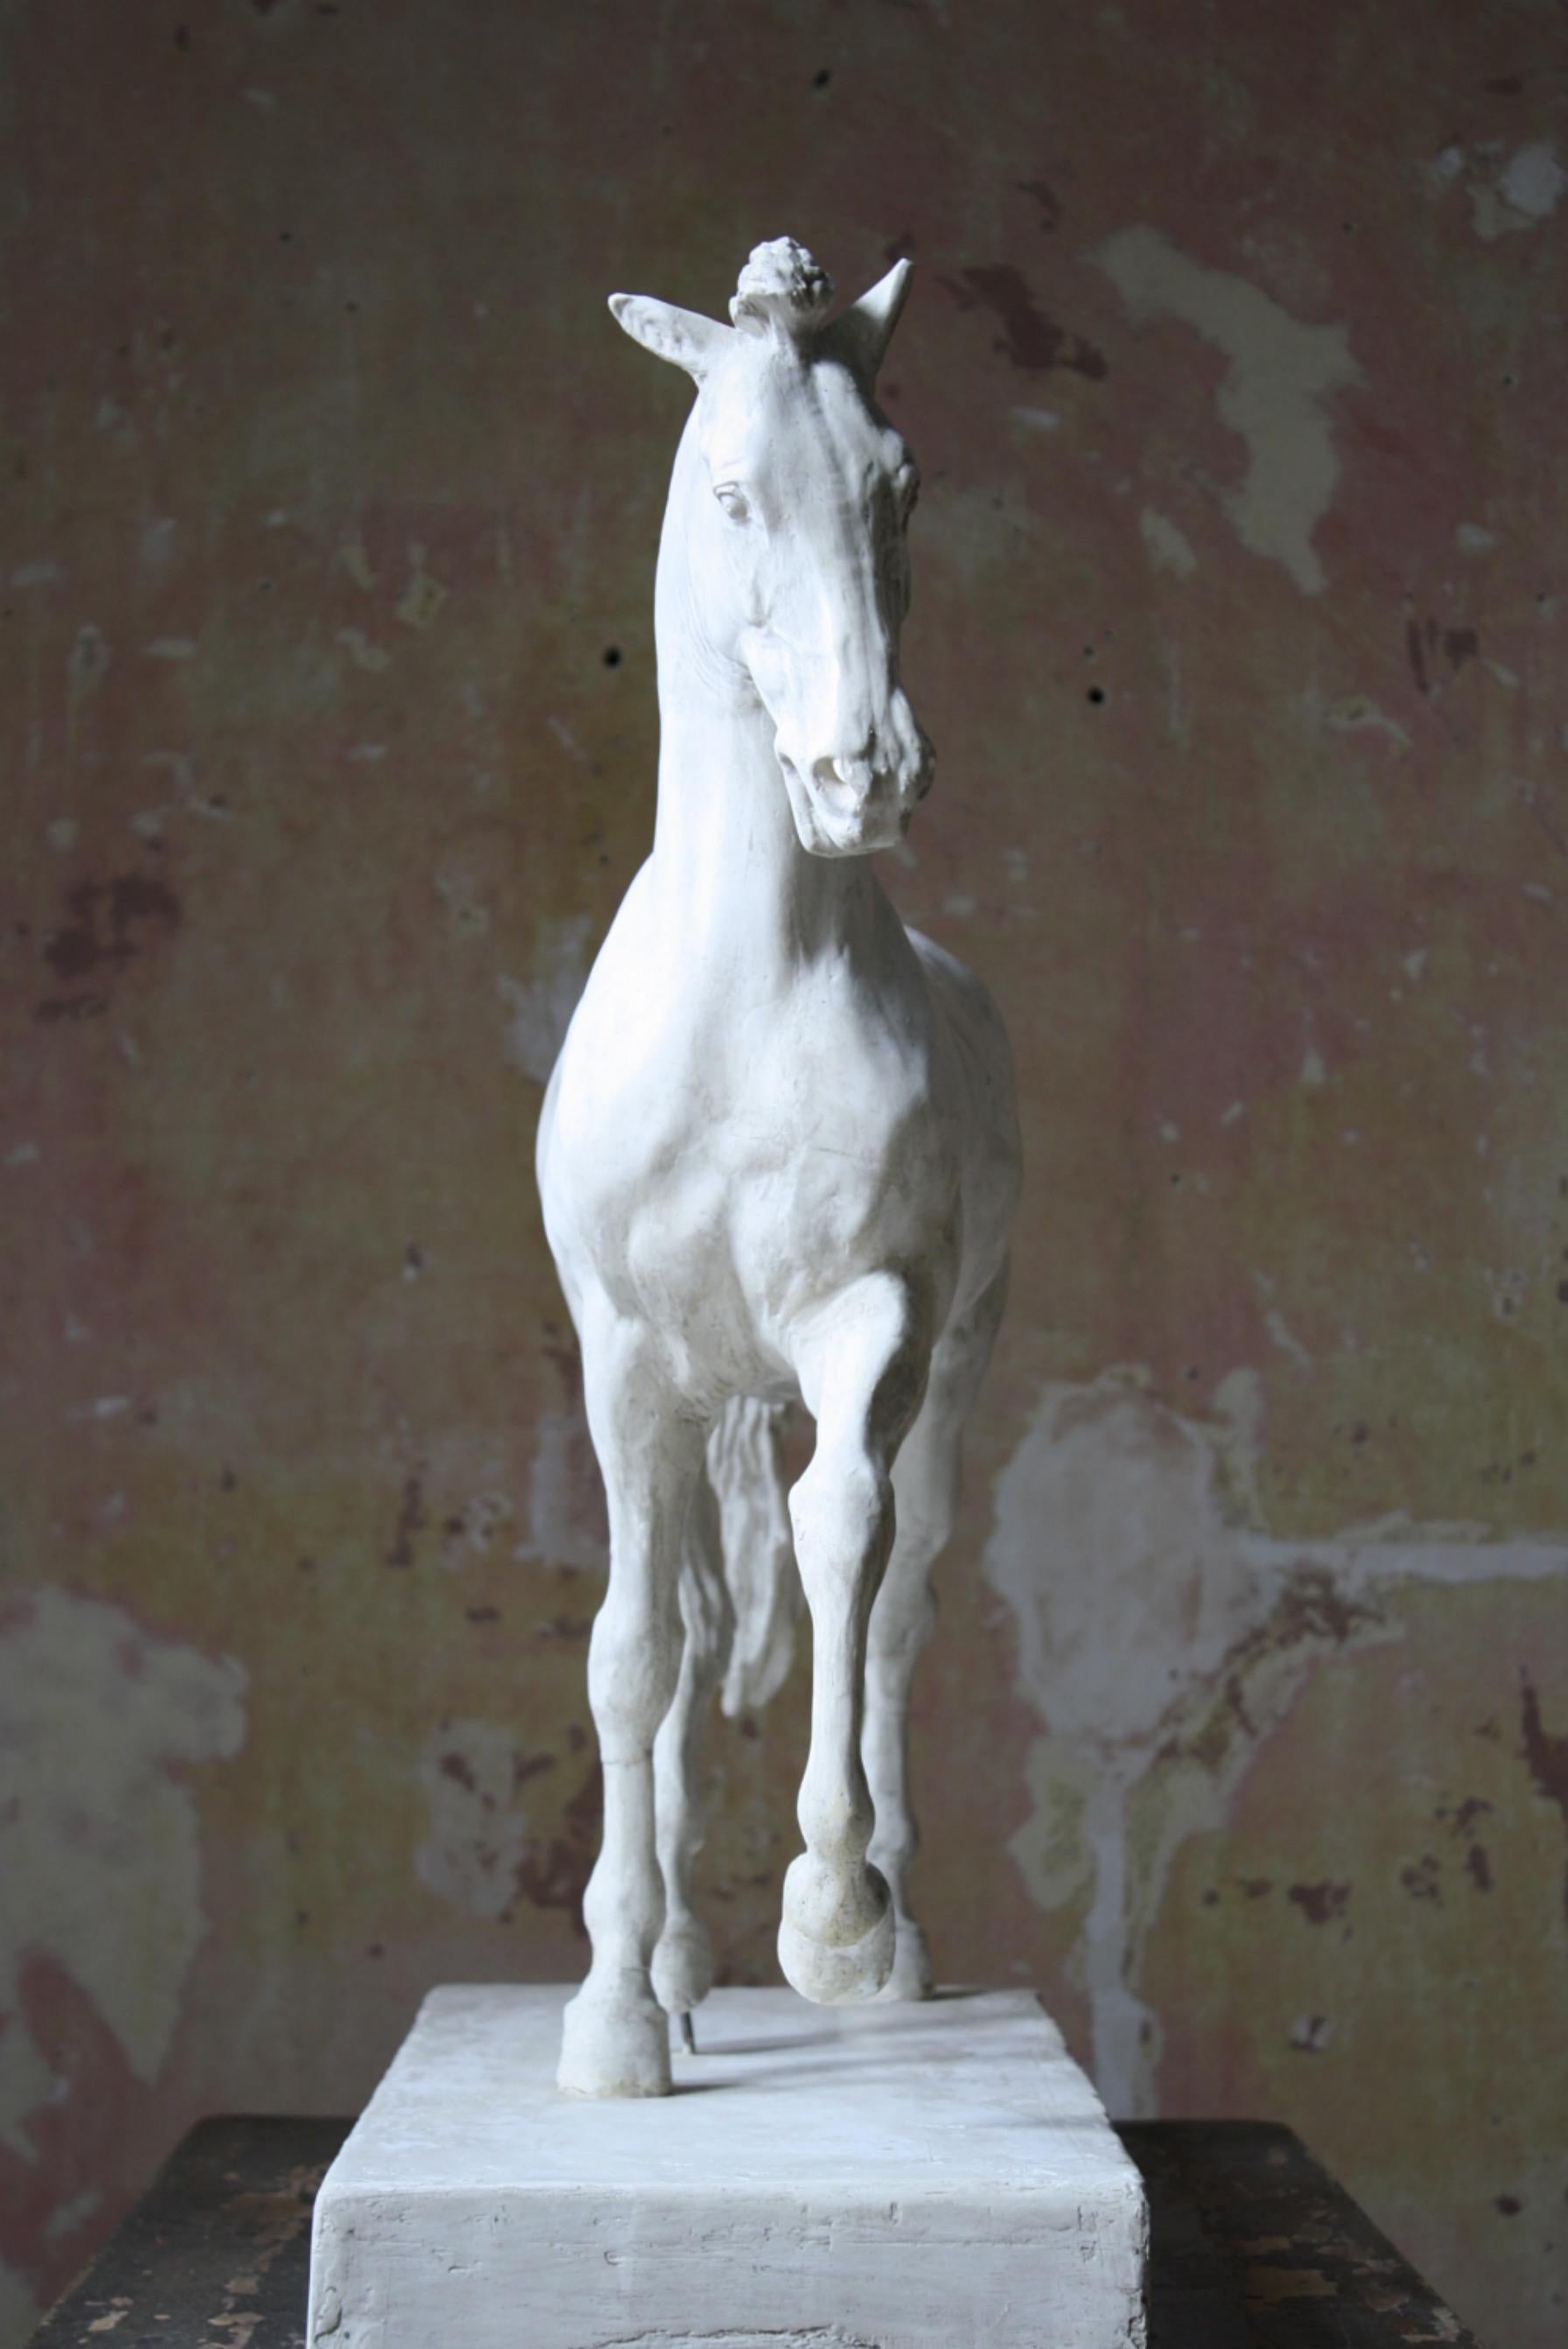 19th C Italian Basilica, Venice St Marks Plaster Equestrian Horse Statuette 10